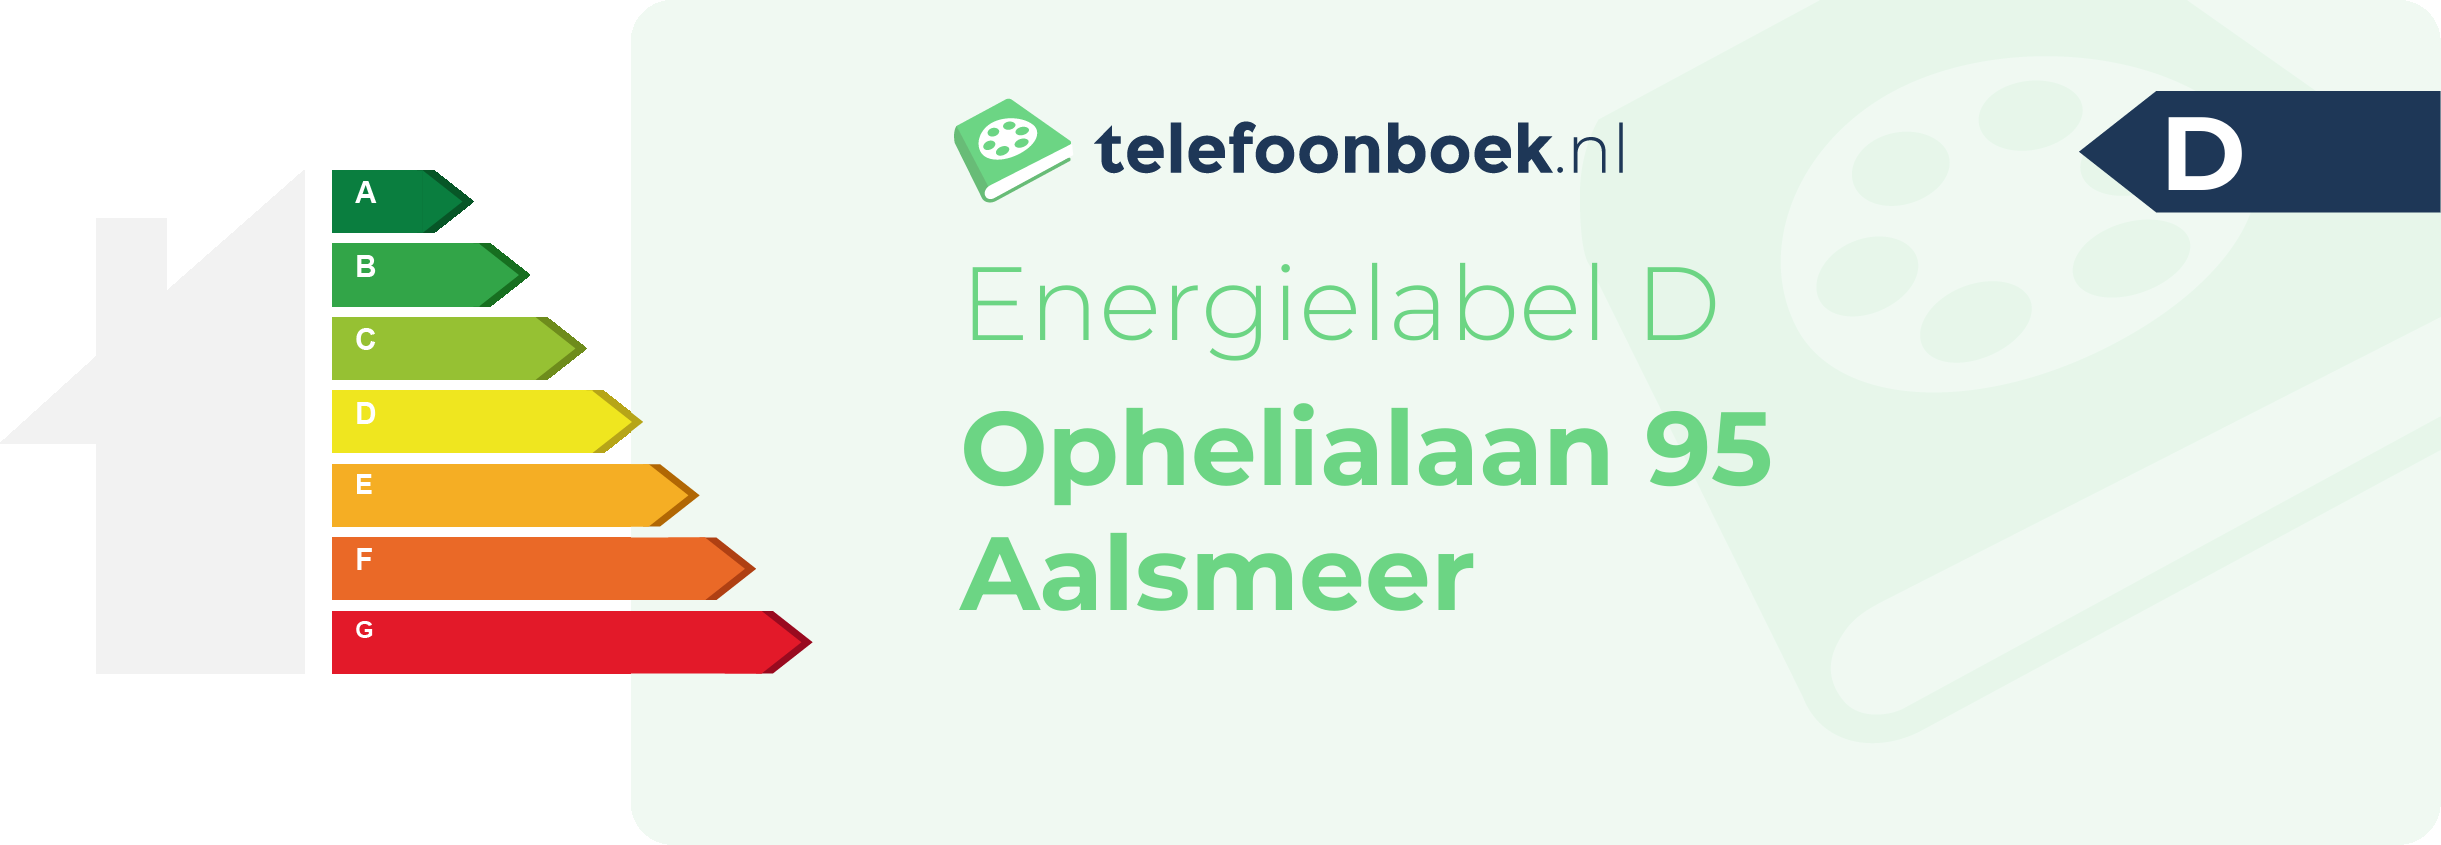 Energielabel Ophelialaan 95 Aalsmeer